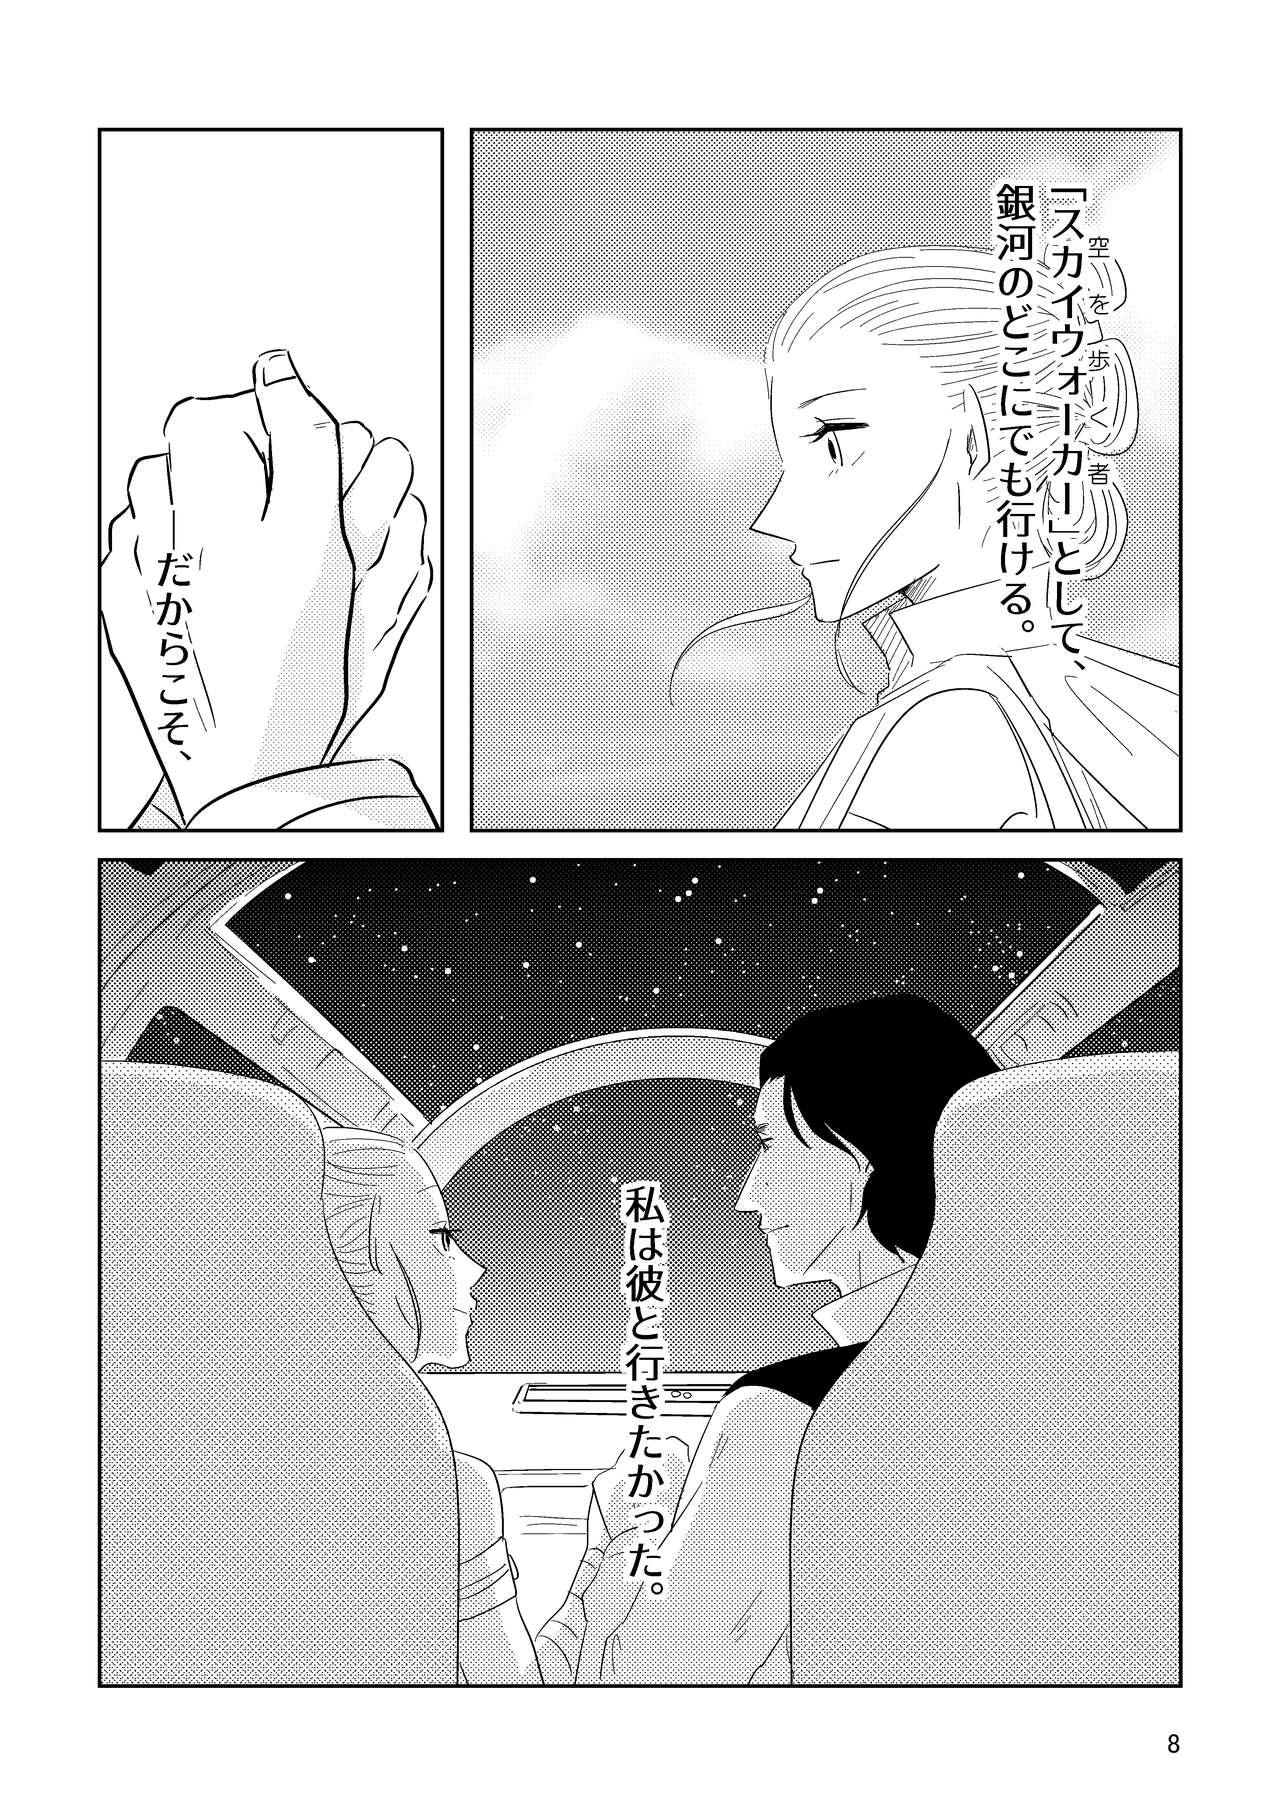 Sola ] Guddomōningusanshain - Star wars Pickup - Page 6